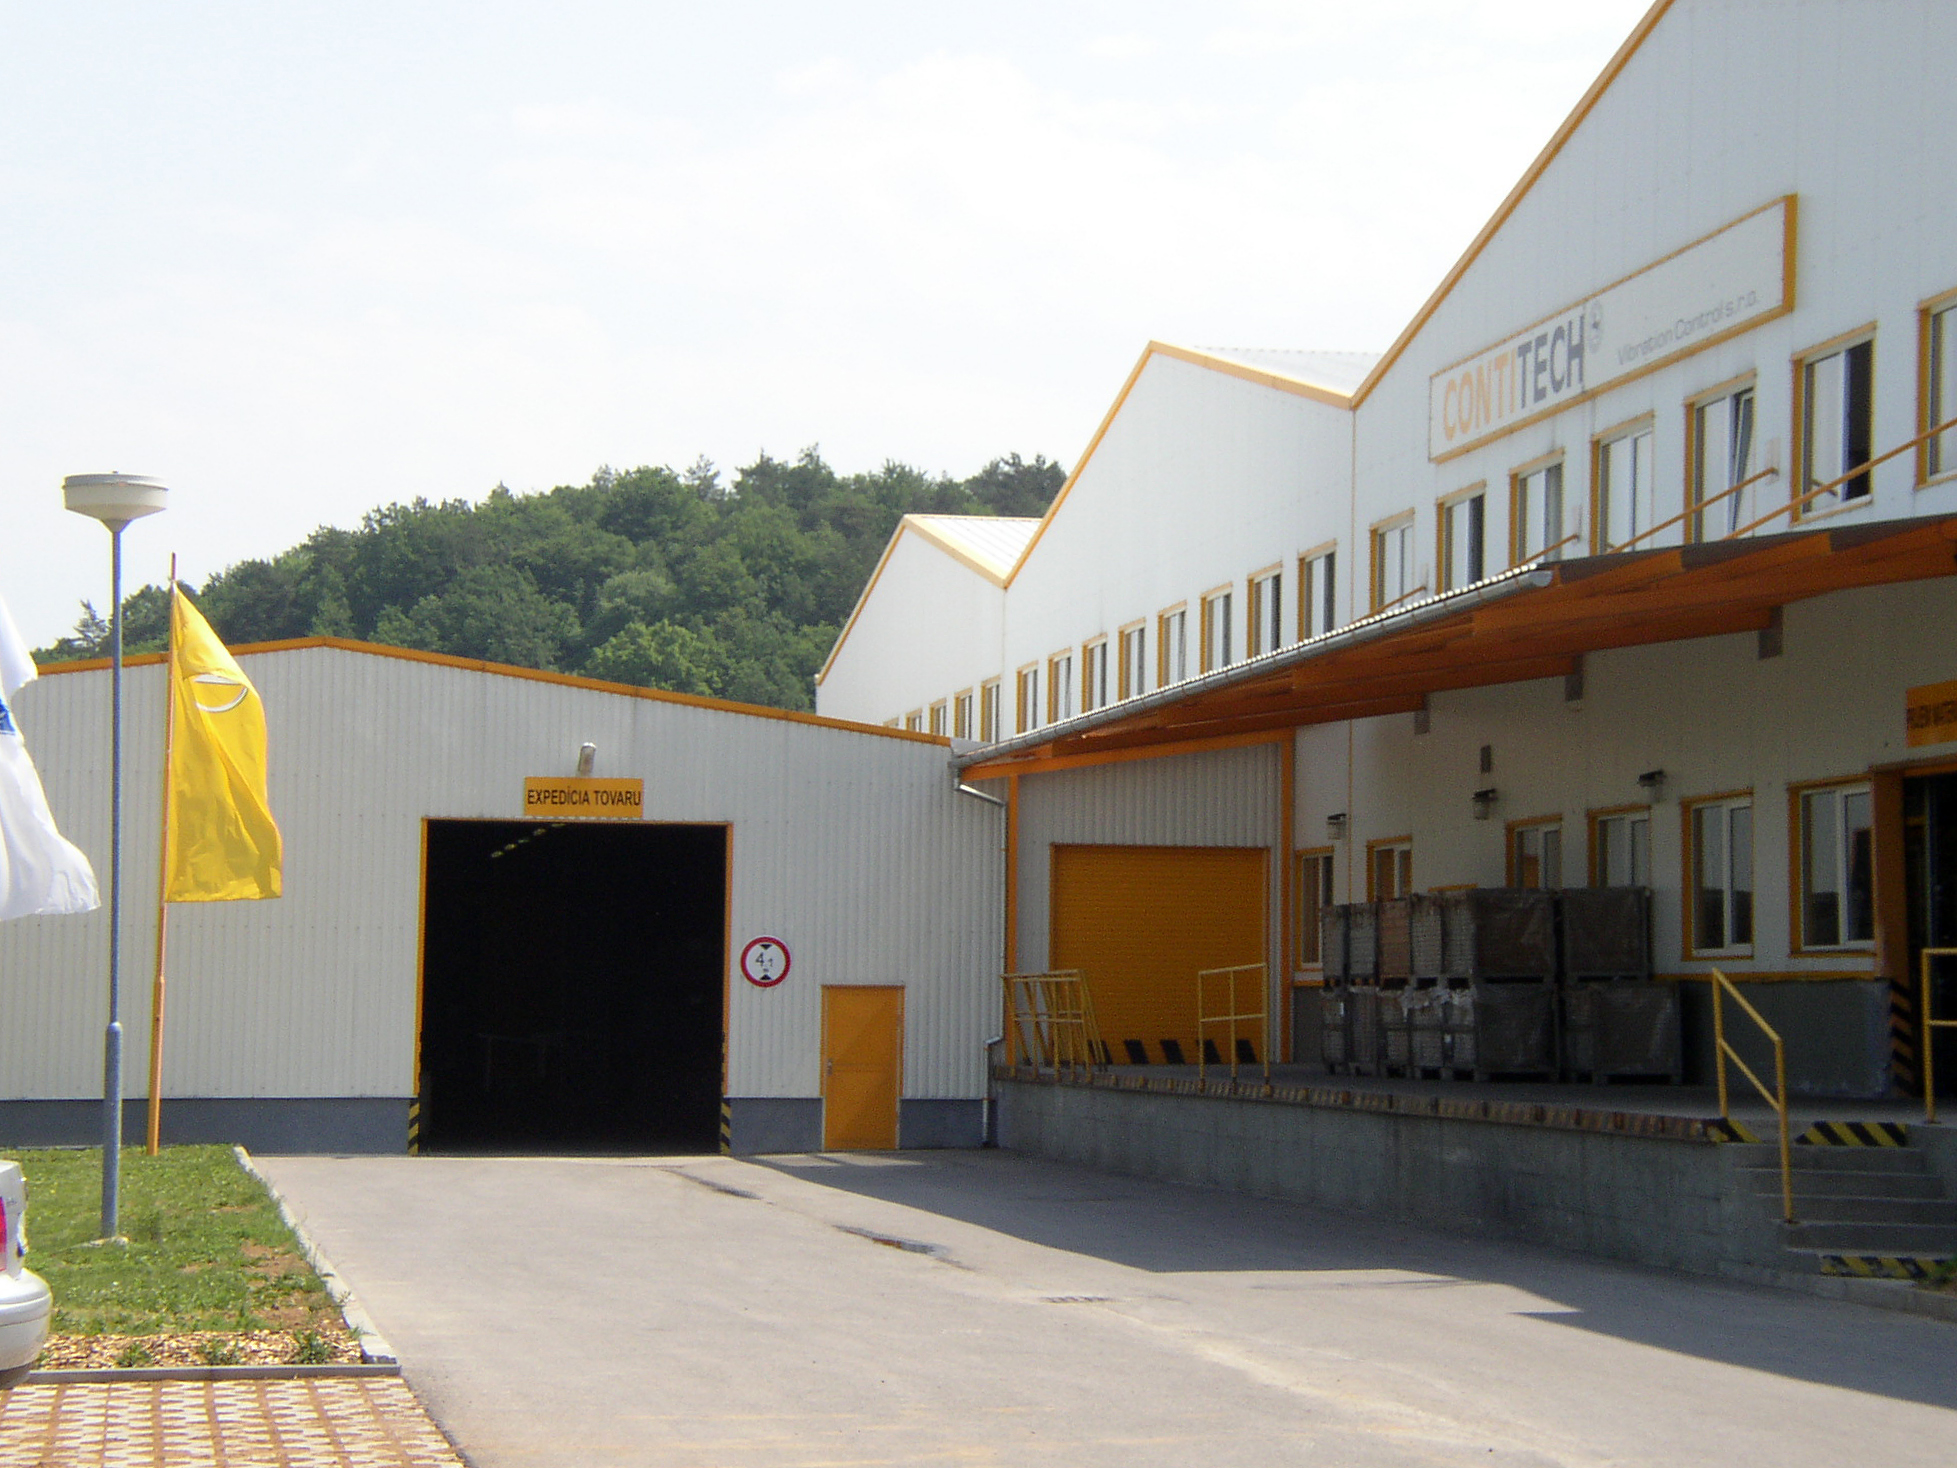 Contitech – prístavba k výrobnej hale v Dolných Vesteniciach